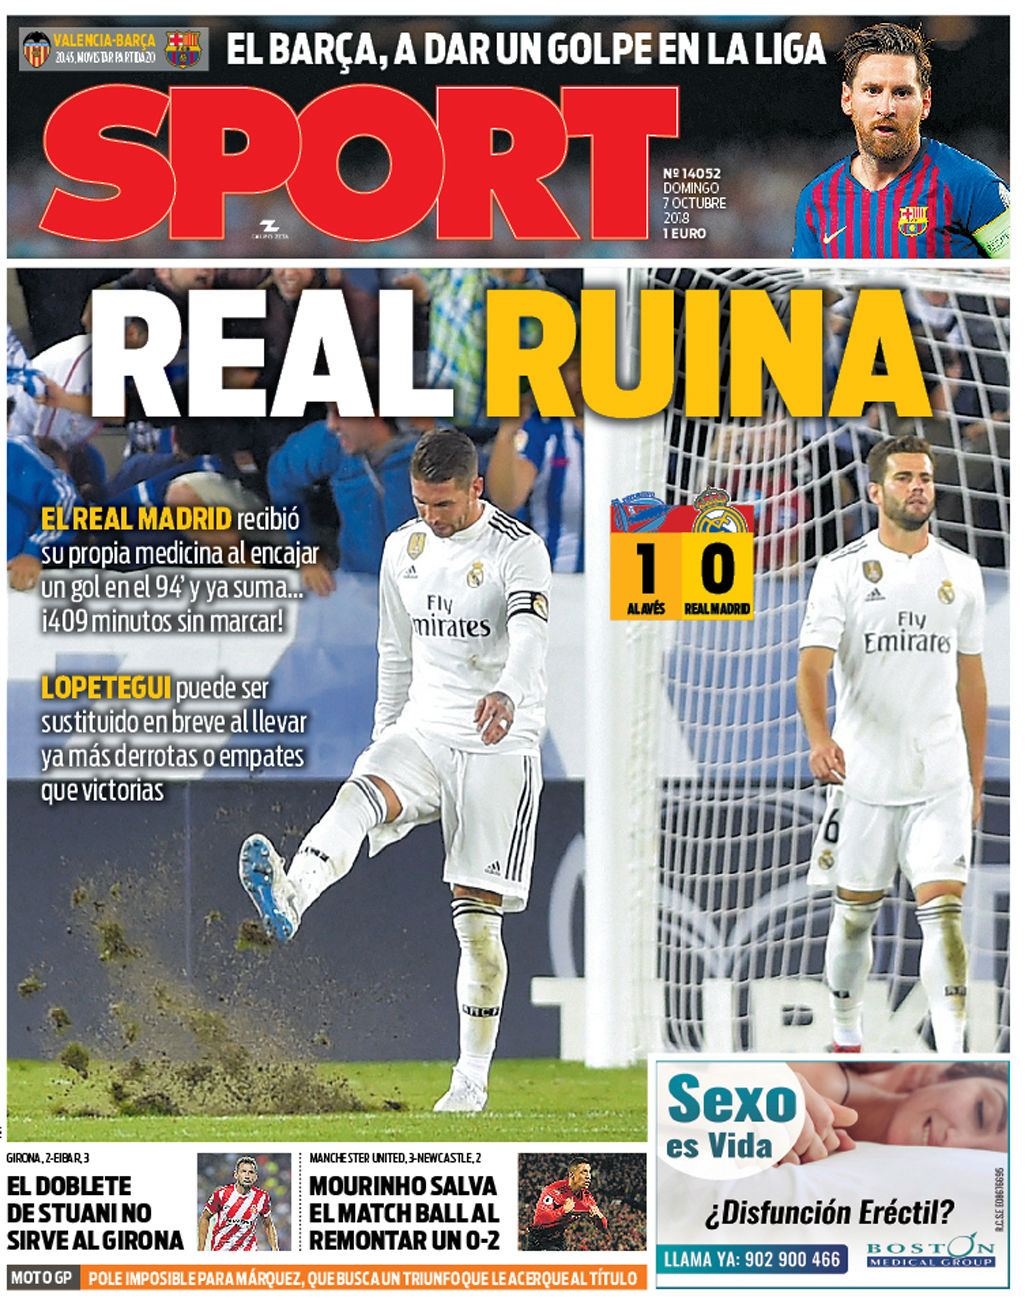 "Кризис Реала". Мадридские и каталонские газеты проявляют редкое единодушие - изображение 3